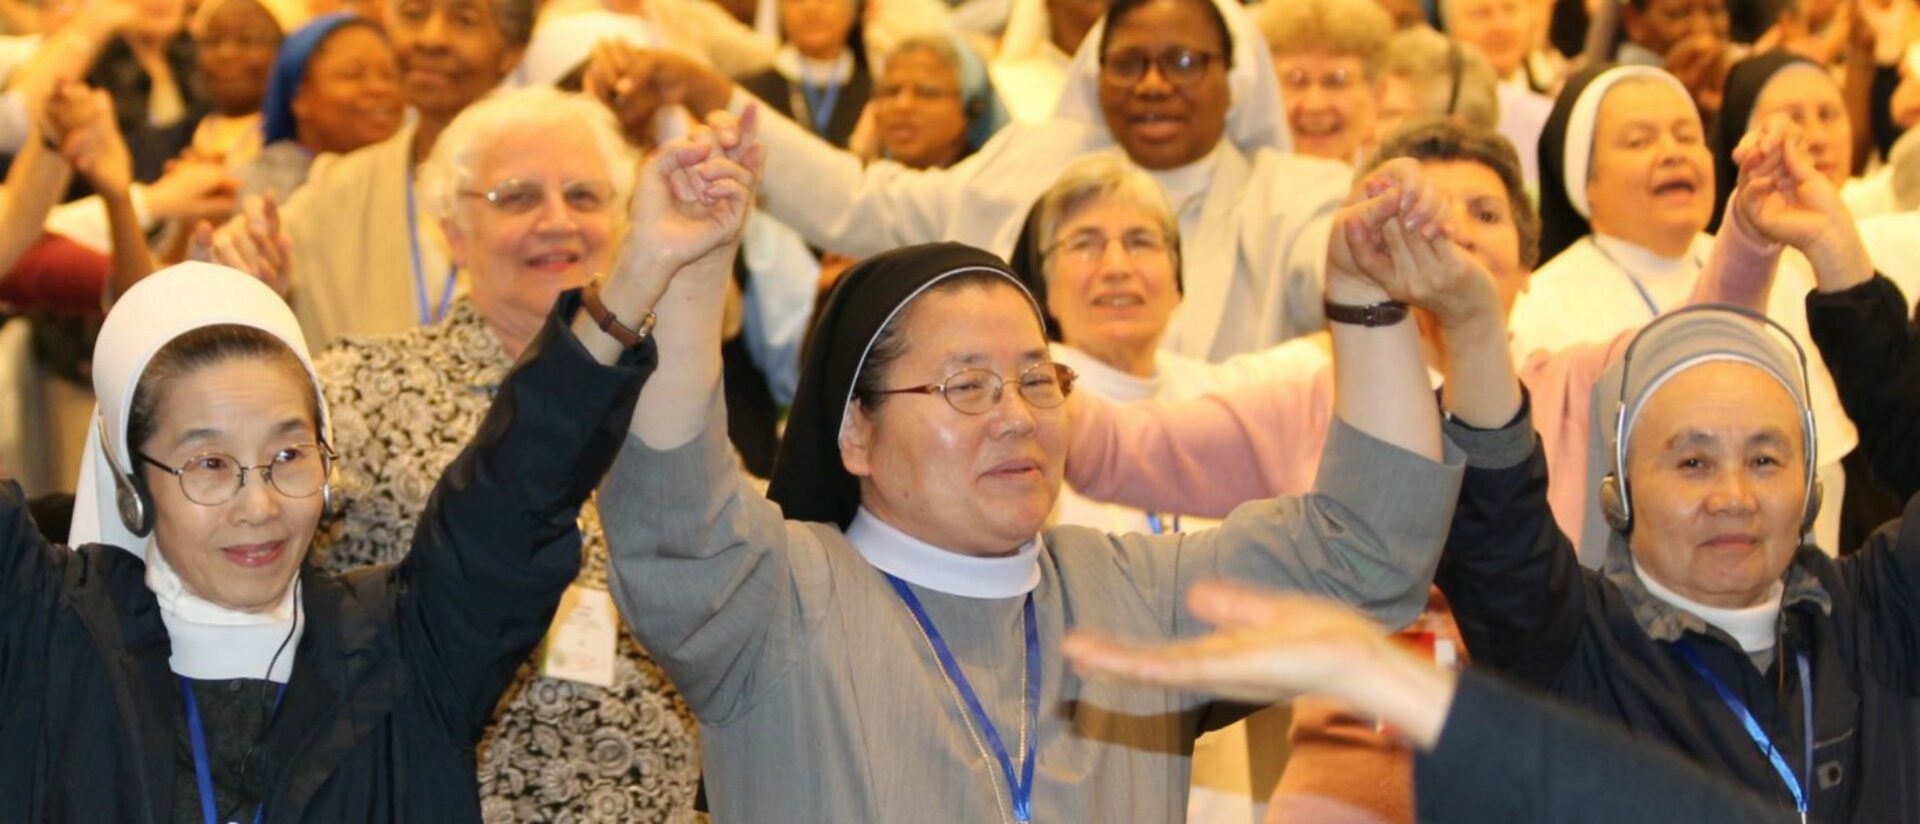 Les femmes dans l'Eglise - religieuses ou laïques - réclament plus de justice et d'action | © www.internationalunionsuperiorsgeneral.org